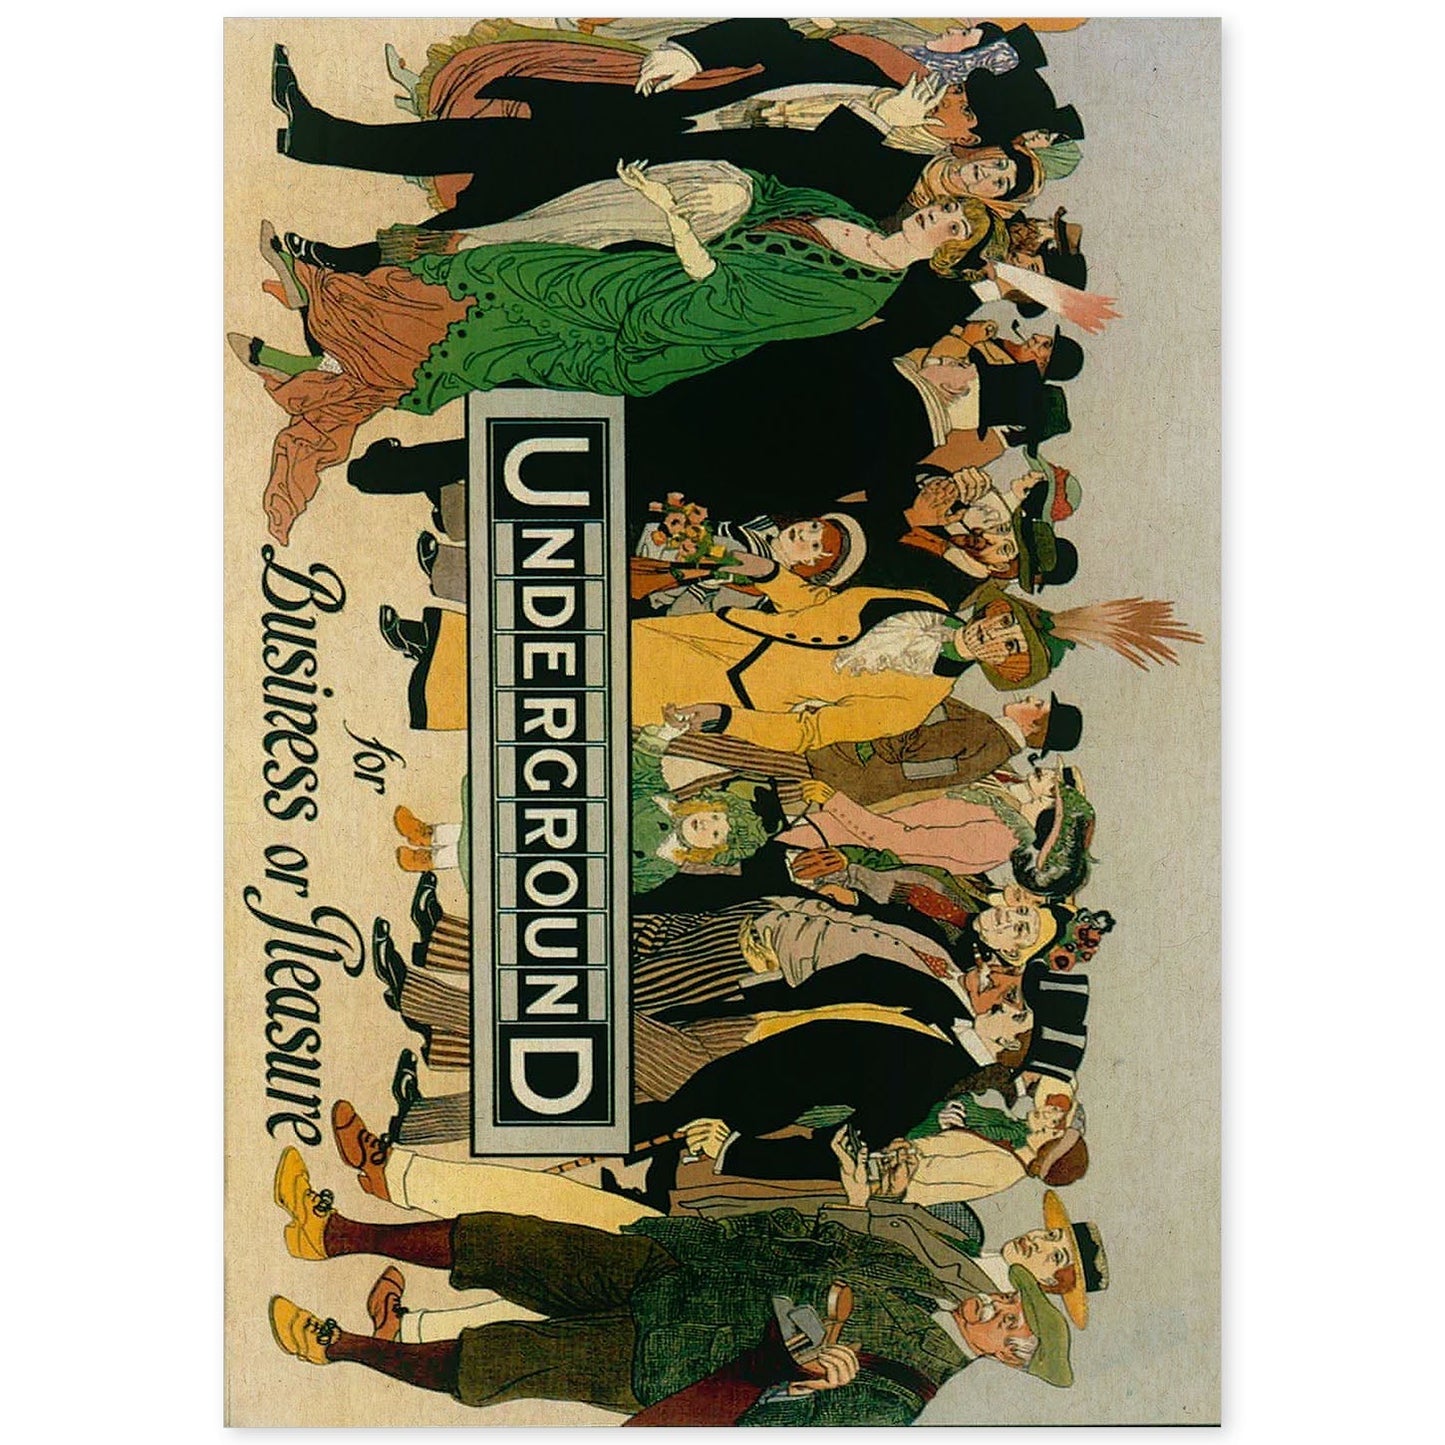 Poster vintage. Cartel vintage de Europa. Metro de Londres, 1913.-Artwork-Nacnic-A4-Sin marco-Nacnic Estudio SL